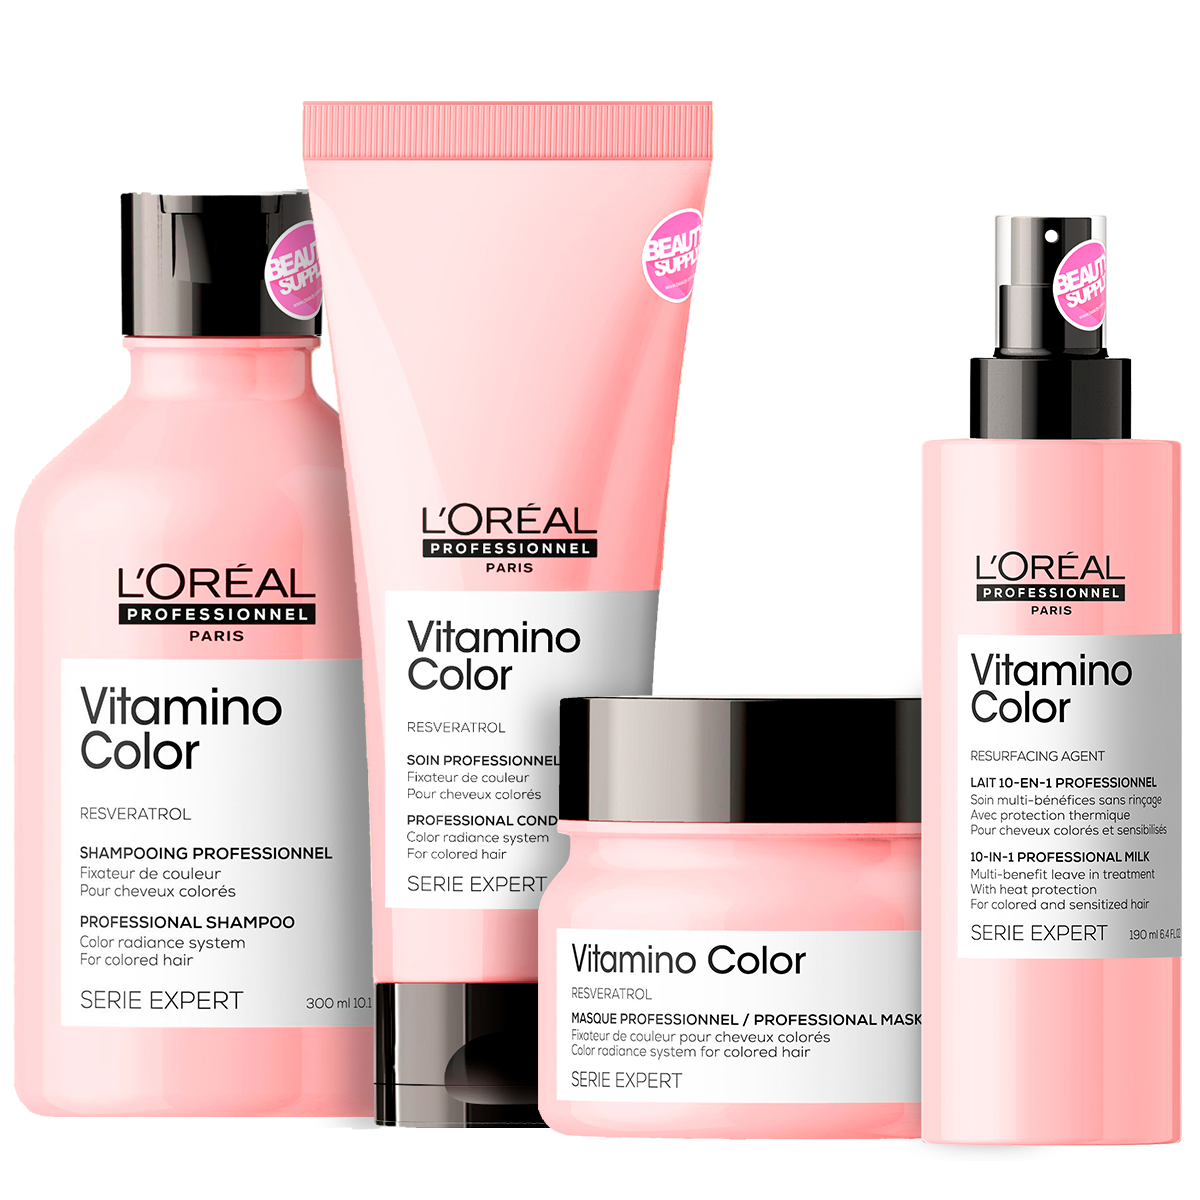 Pack Loreal Shampoo Acondicionador Mascara Vitamino Color en Beauty Supply